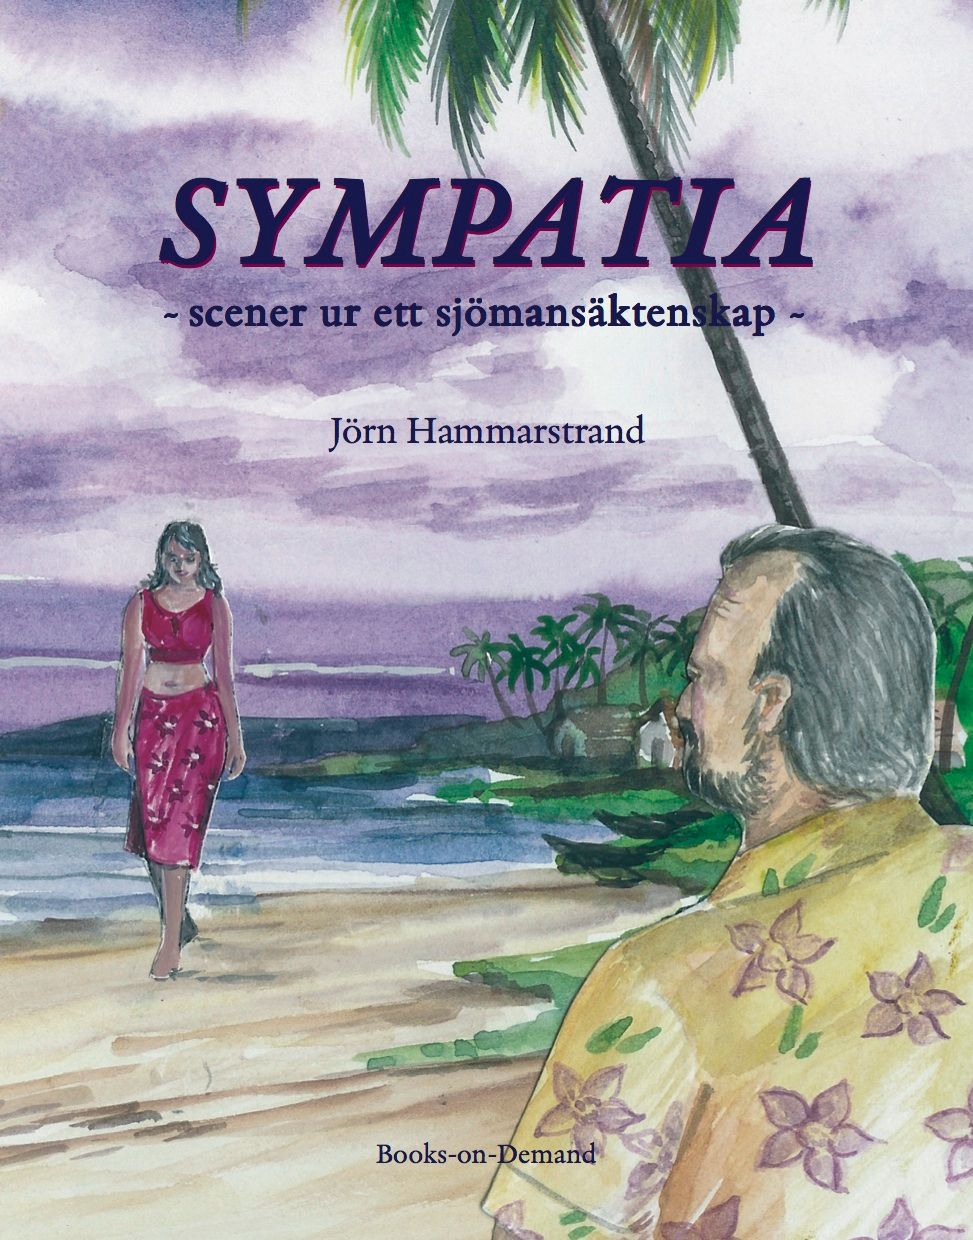 Sympatia- scener ur ett sjömansäktenskap, e-bok av Jörn Hammarstrand